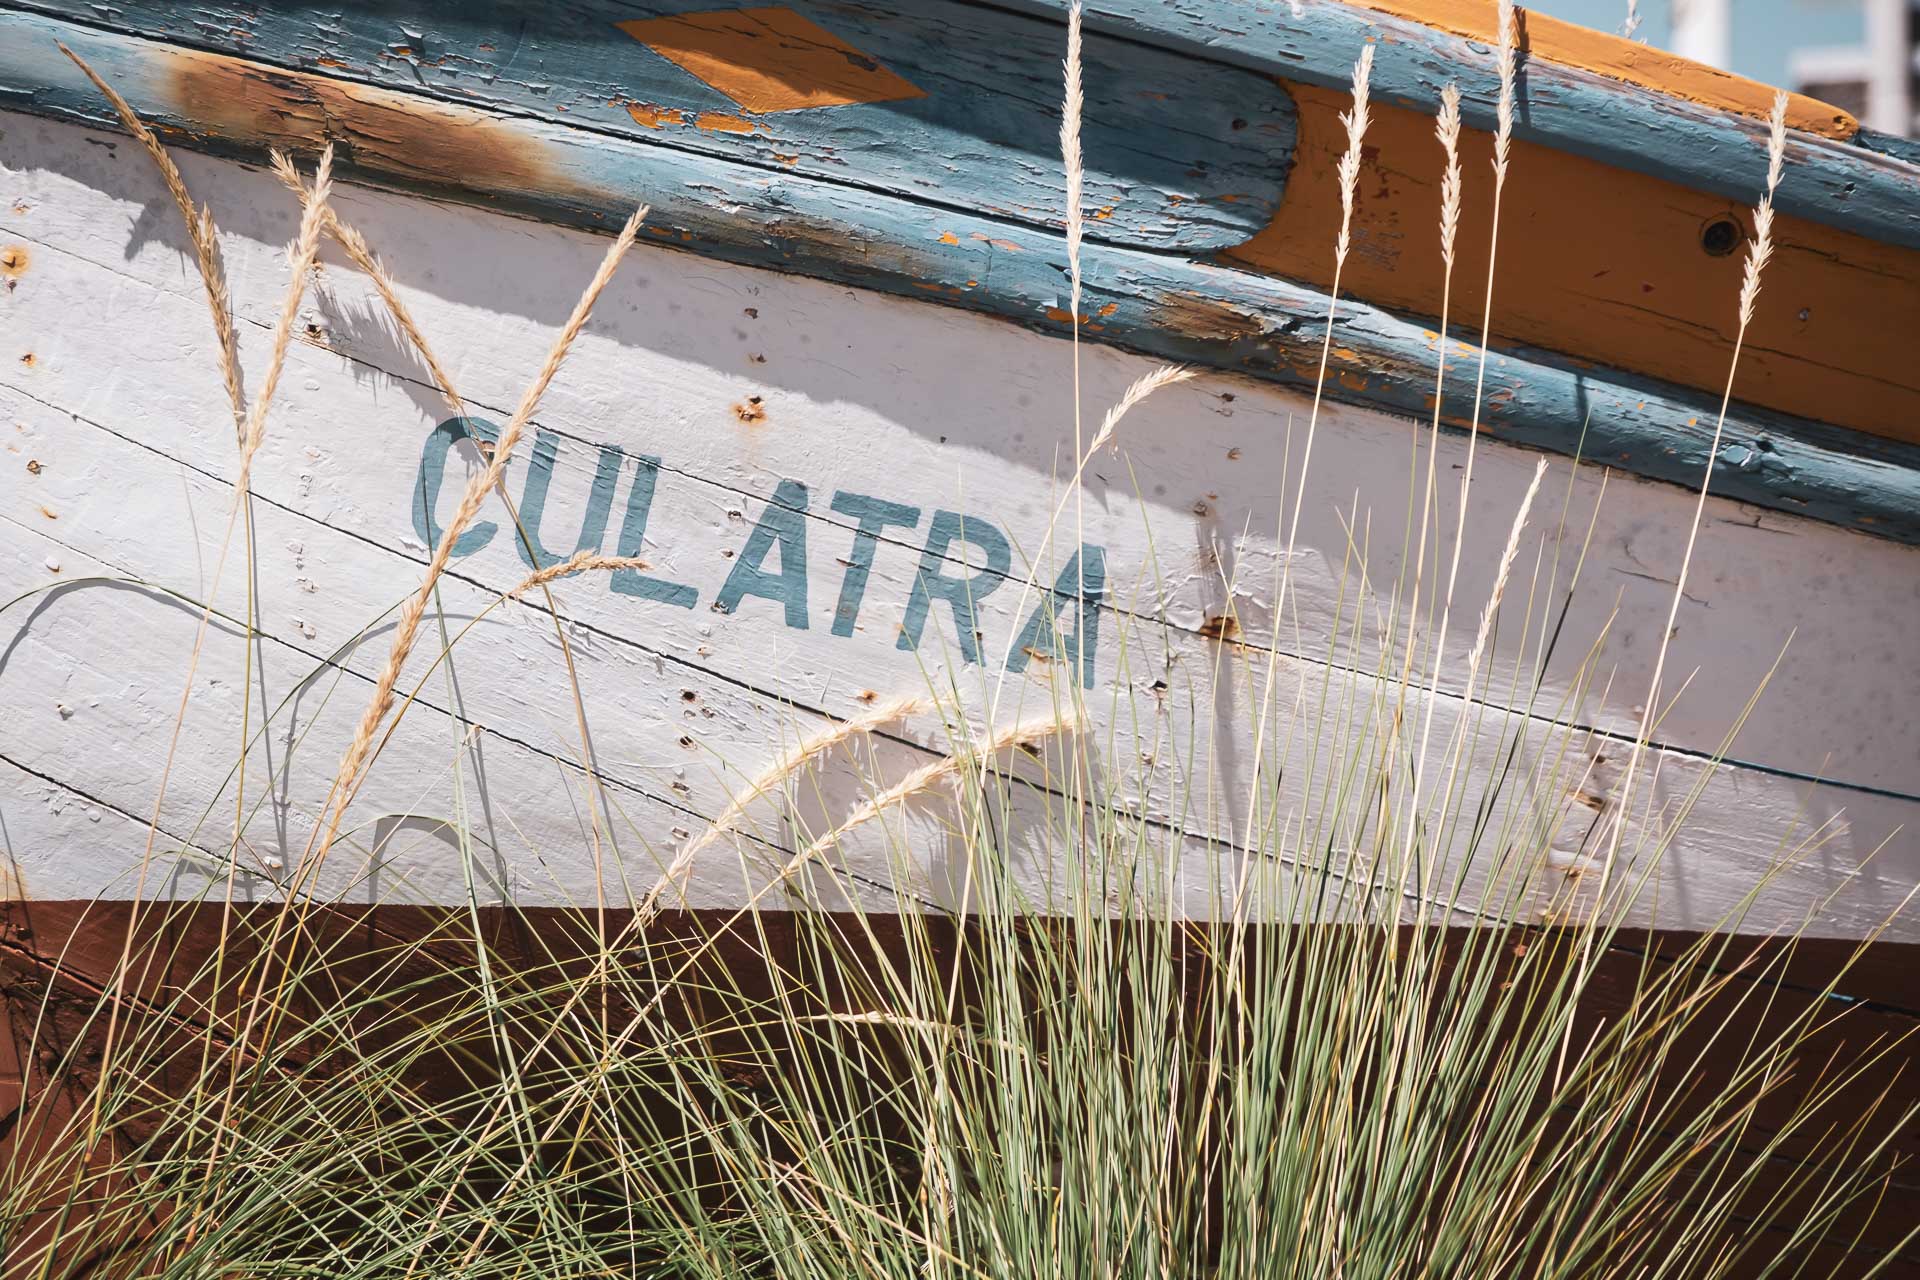 Ilha da Culatra – det blir en dag på stranden